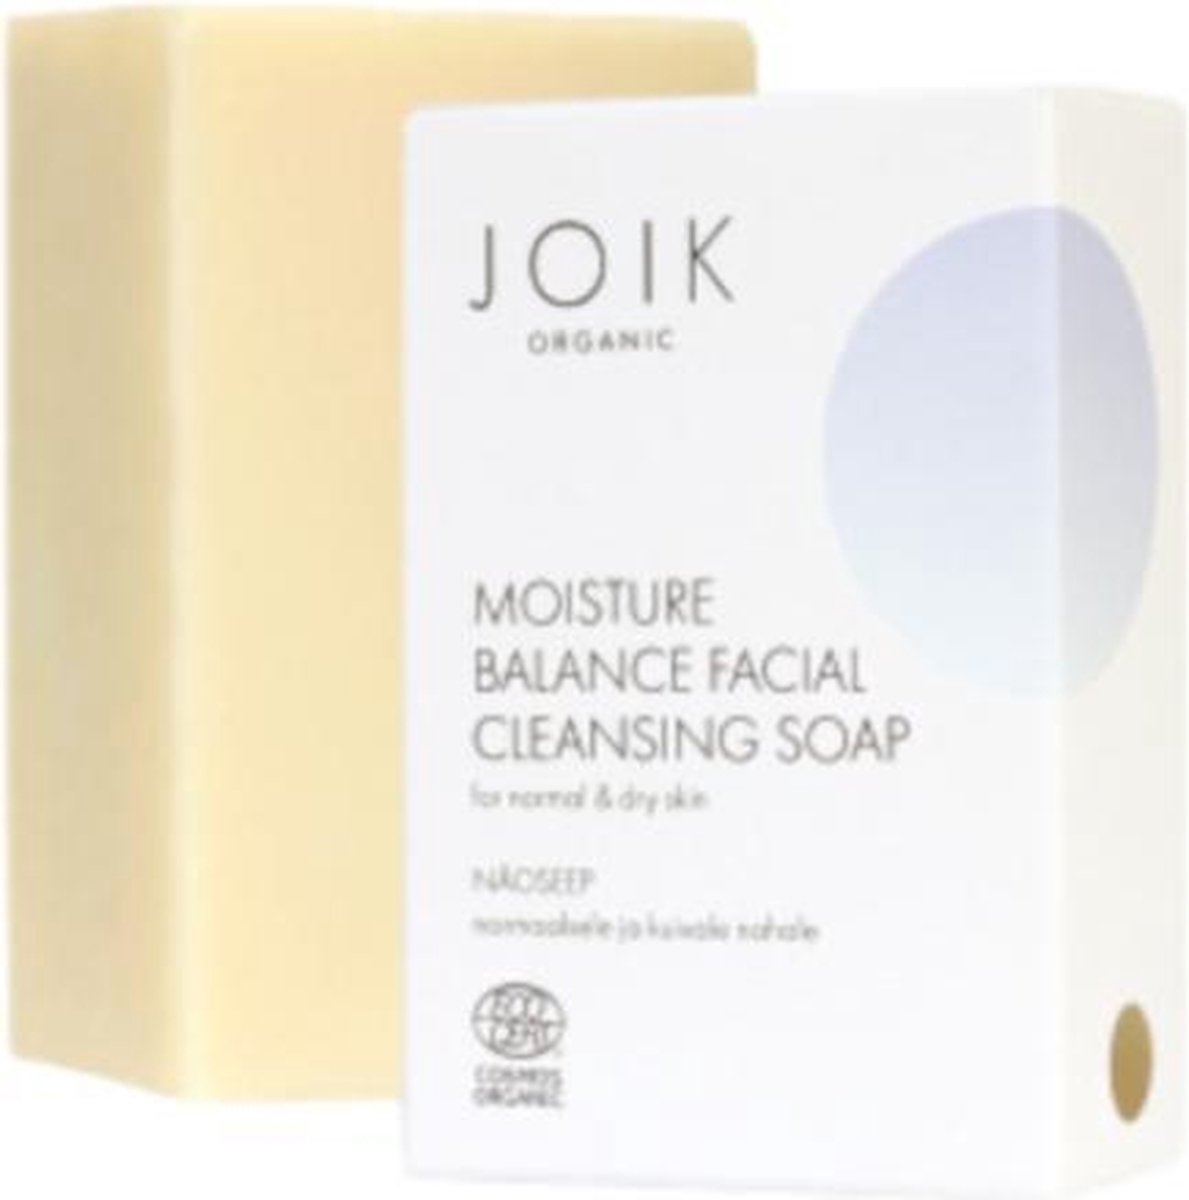 Joik Moisture Balance Facial Soap for normal/dry skin Gezichtszeep 100g